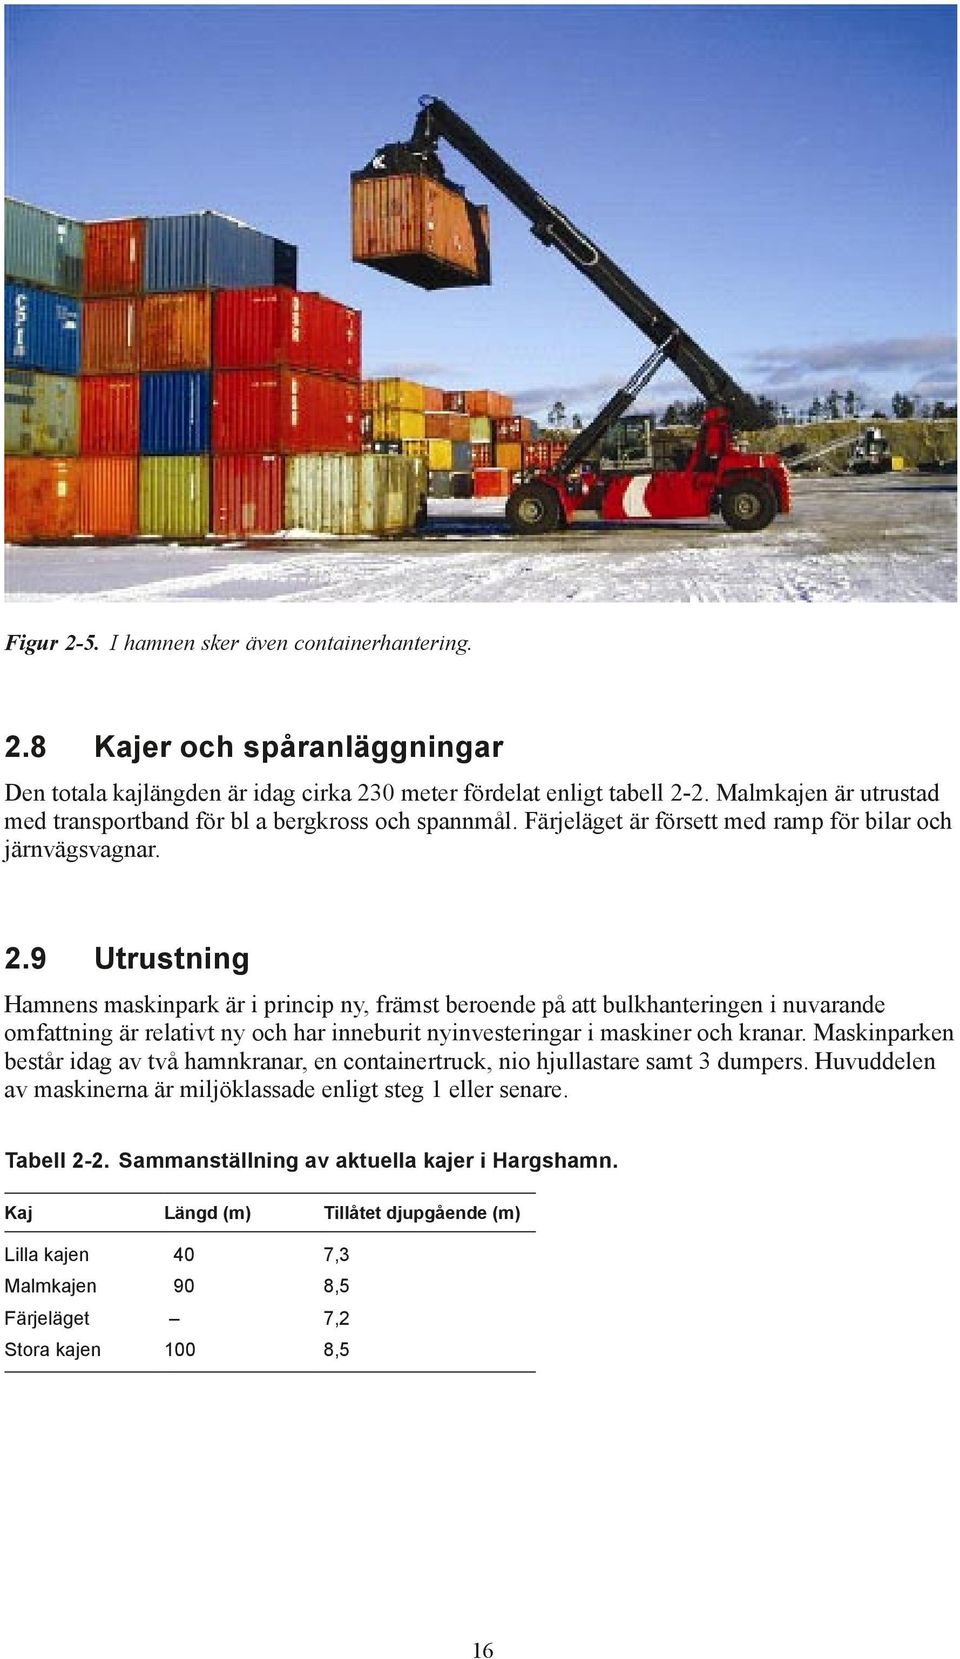 9 Utrustning Hamnens maskinpark är i princip ny, främst beroende på att bulkhanteringen i nuvarande omfattning är relativt ny och har inneburit nyinvesteringar i maskiner och kranar.